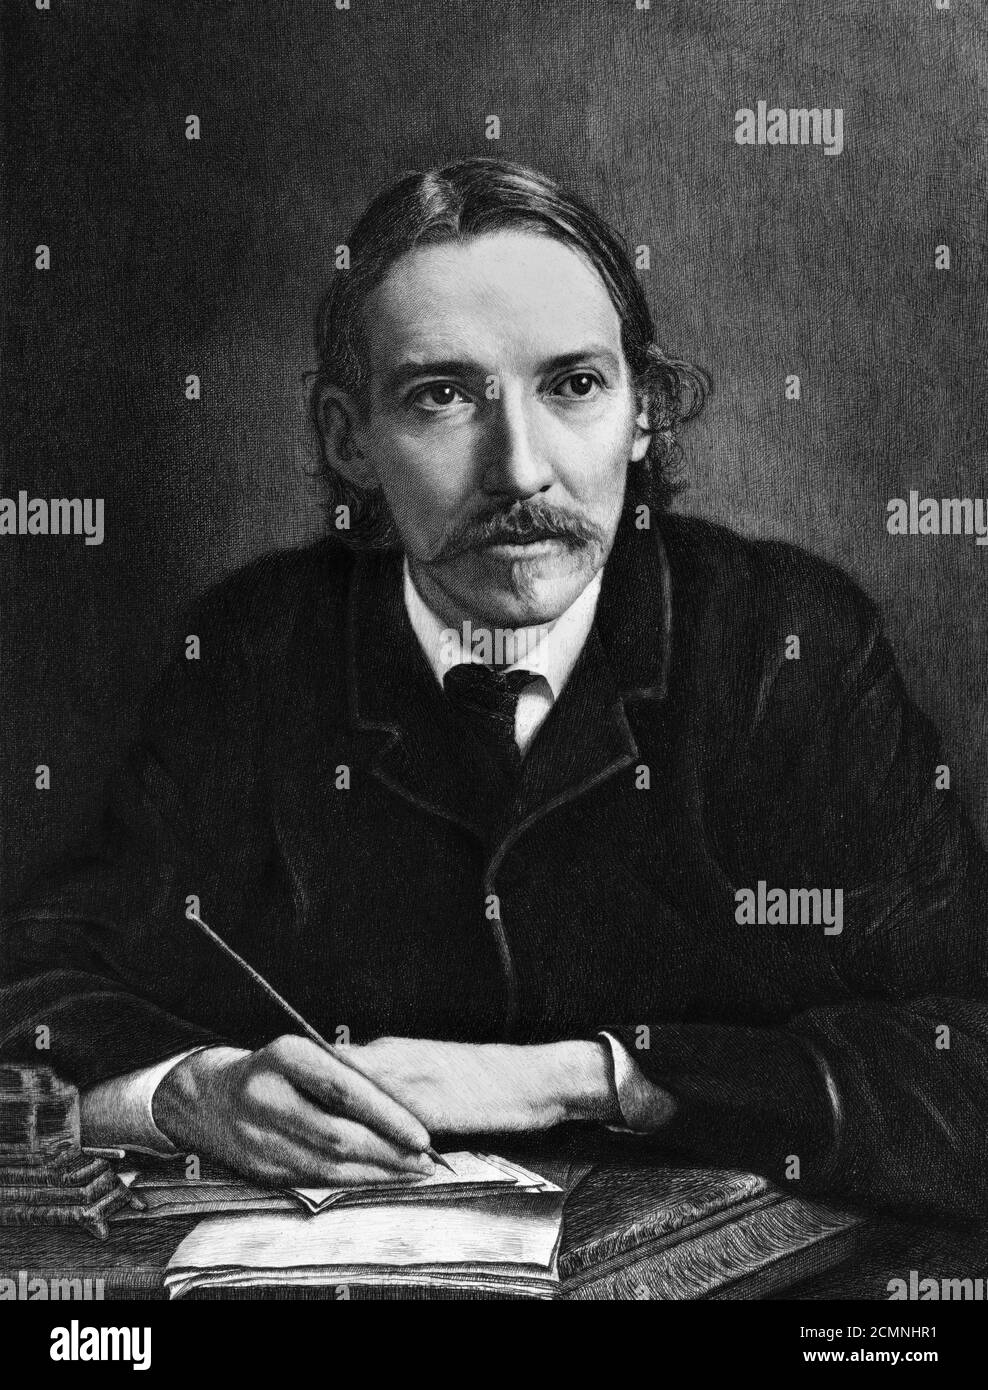 Robert Louis Stevenson. Portrait du romancier écossais Robert Louis Stevenson (1850-1894), par Jacques Reich, gravure, 1909 Banque D'Images